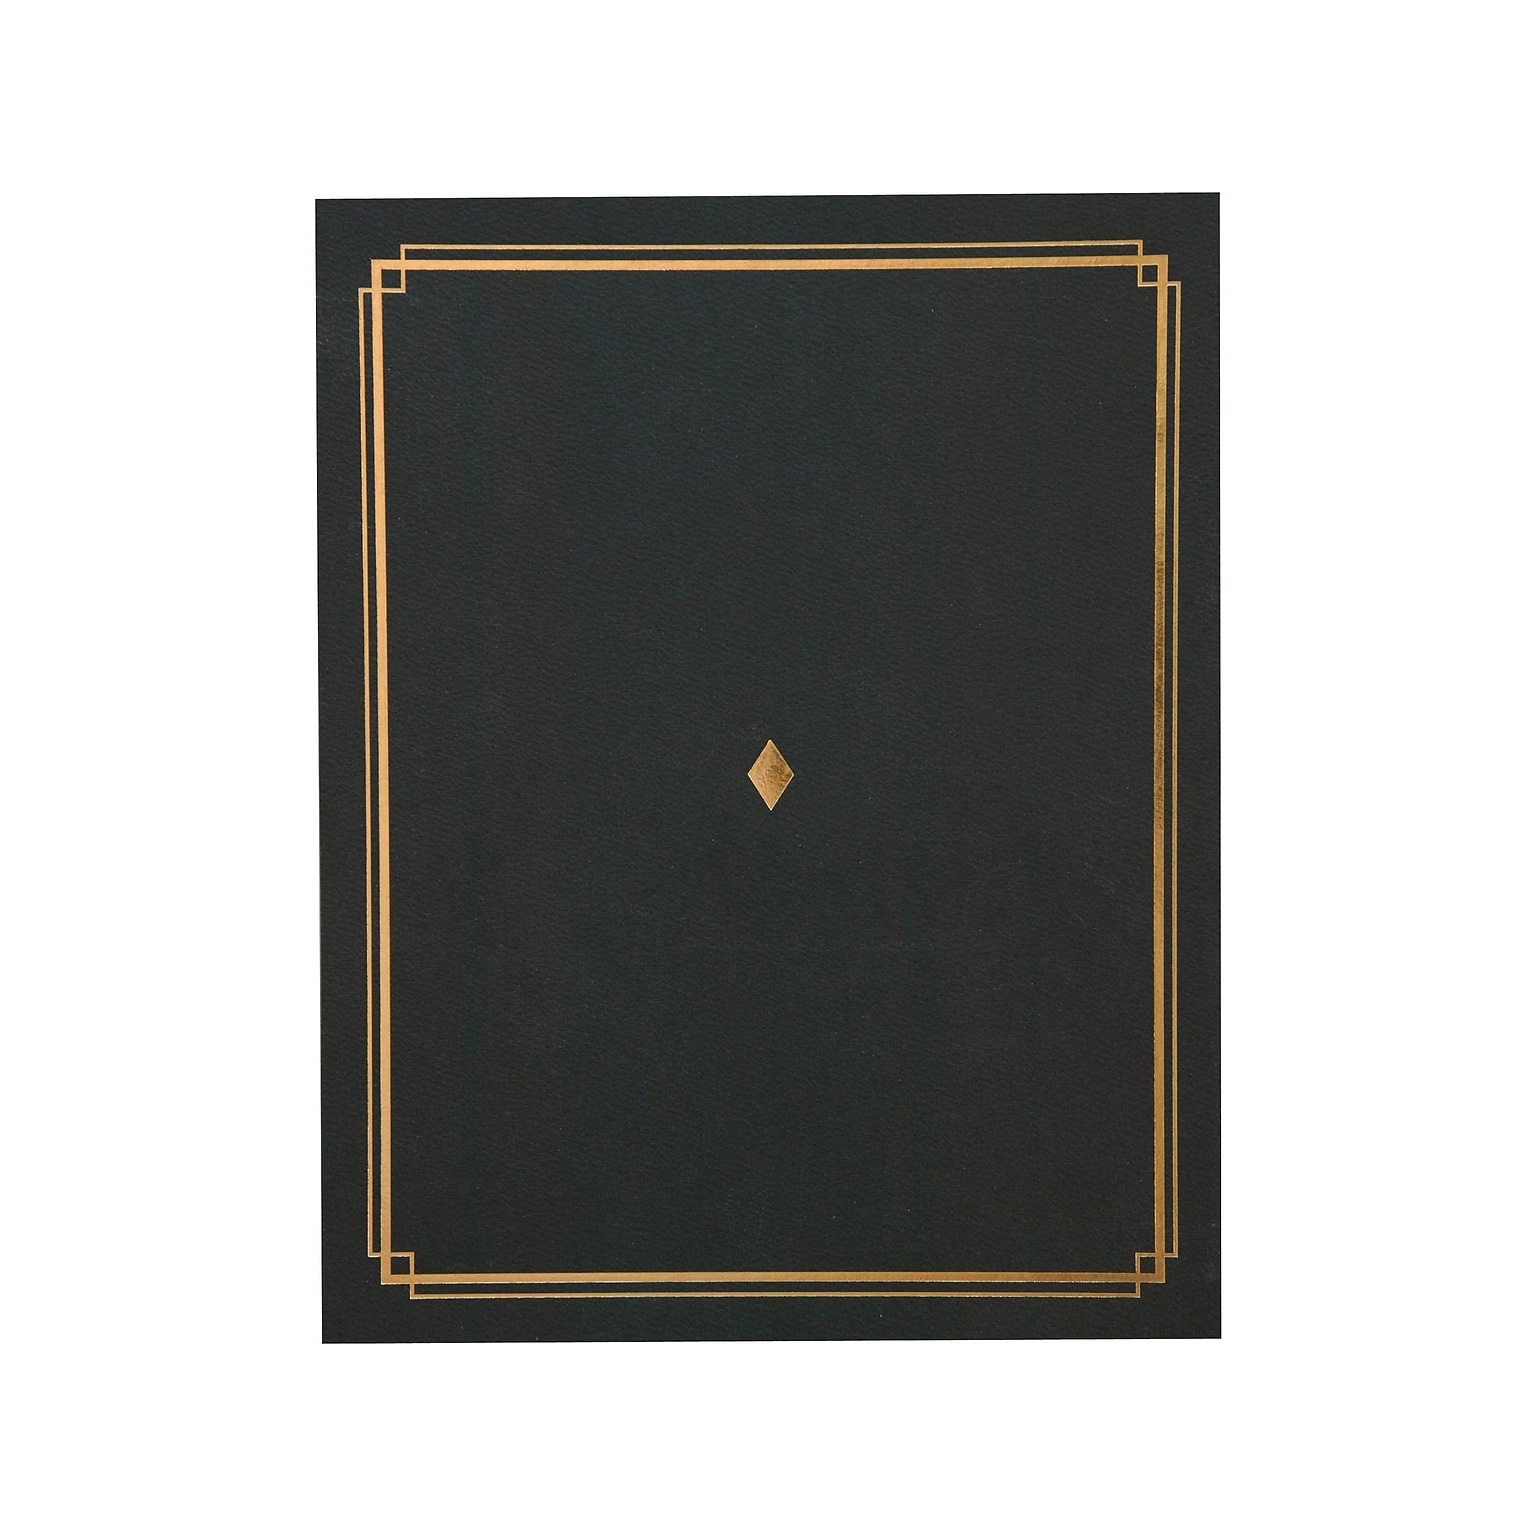 Gartner Studios Certificate Holders, 8.5 x 11, Black/Gold, 6/Pack (35003)